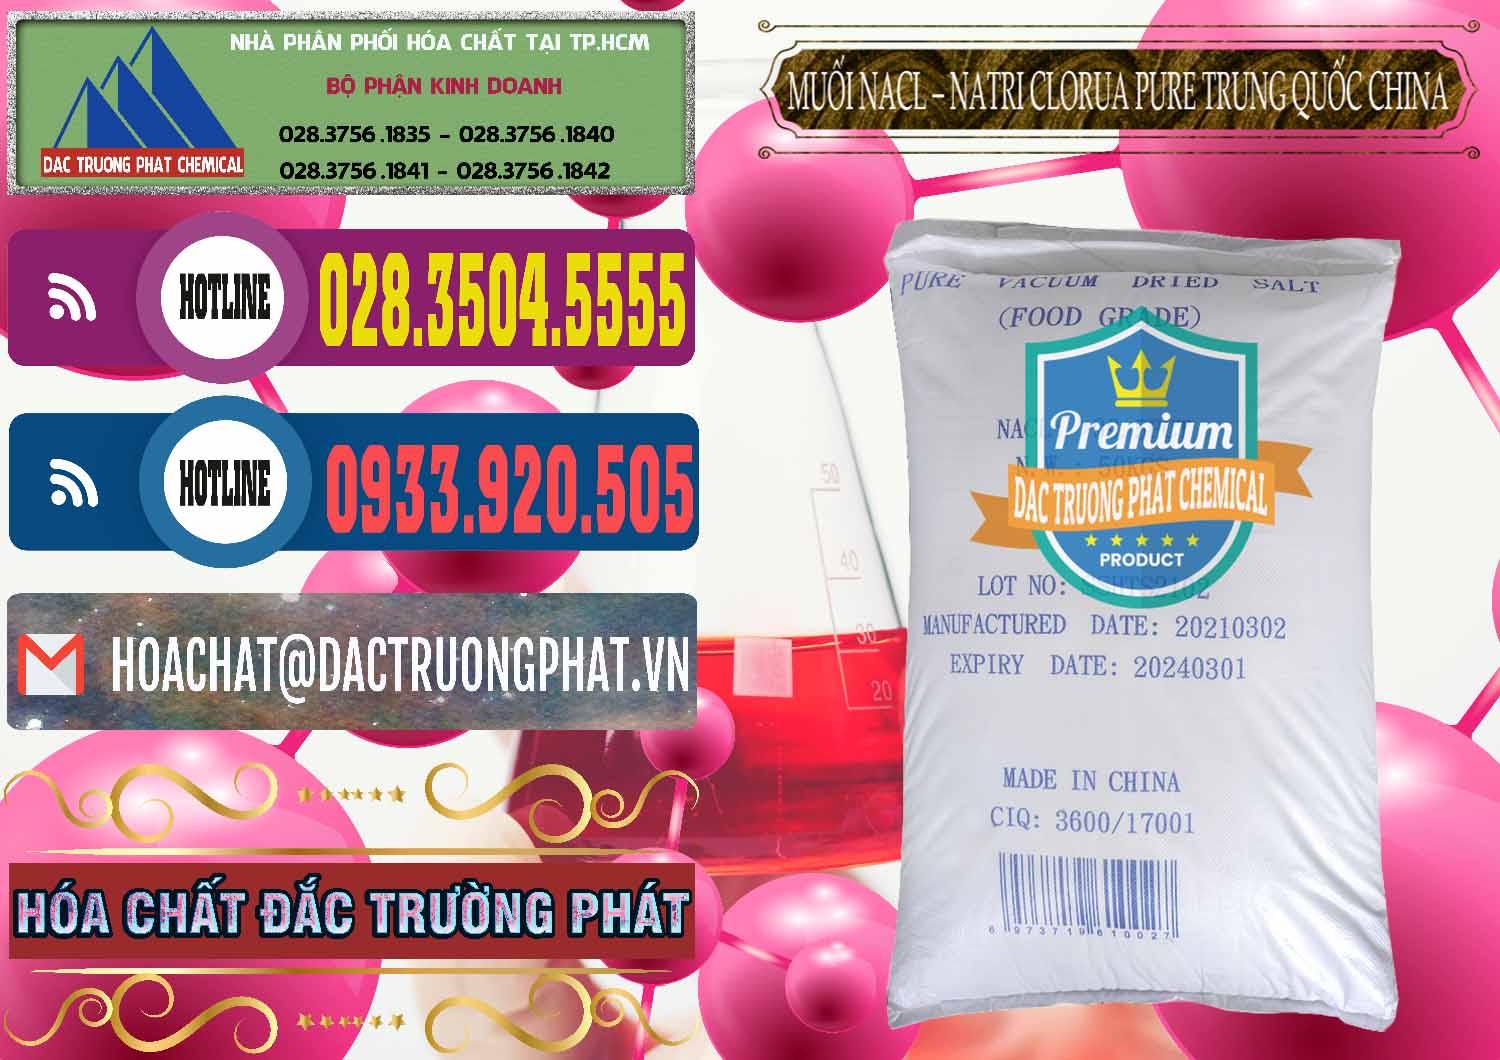 Công ty cung cấp & bán Muối NaCL – Sodium Chloride Pure Trung Quốc China - 0230 - Nơi bán ( phân phối ) hóa chất tại TP.HCM - muabanhoachat.com.vn